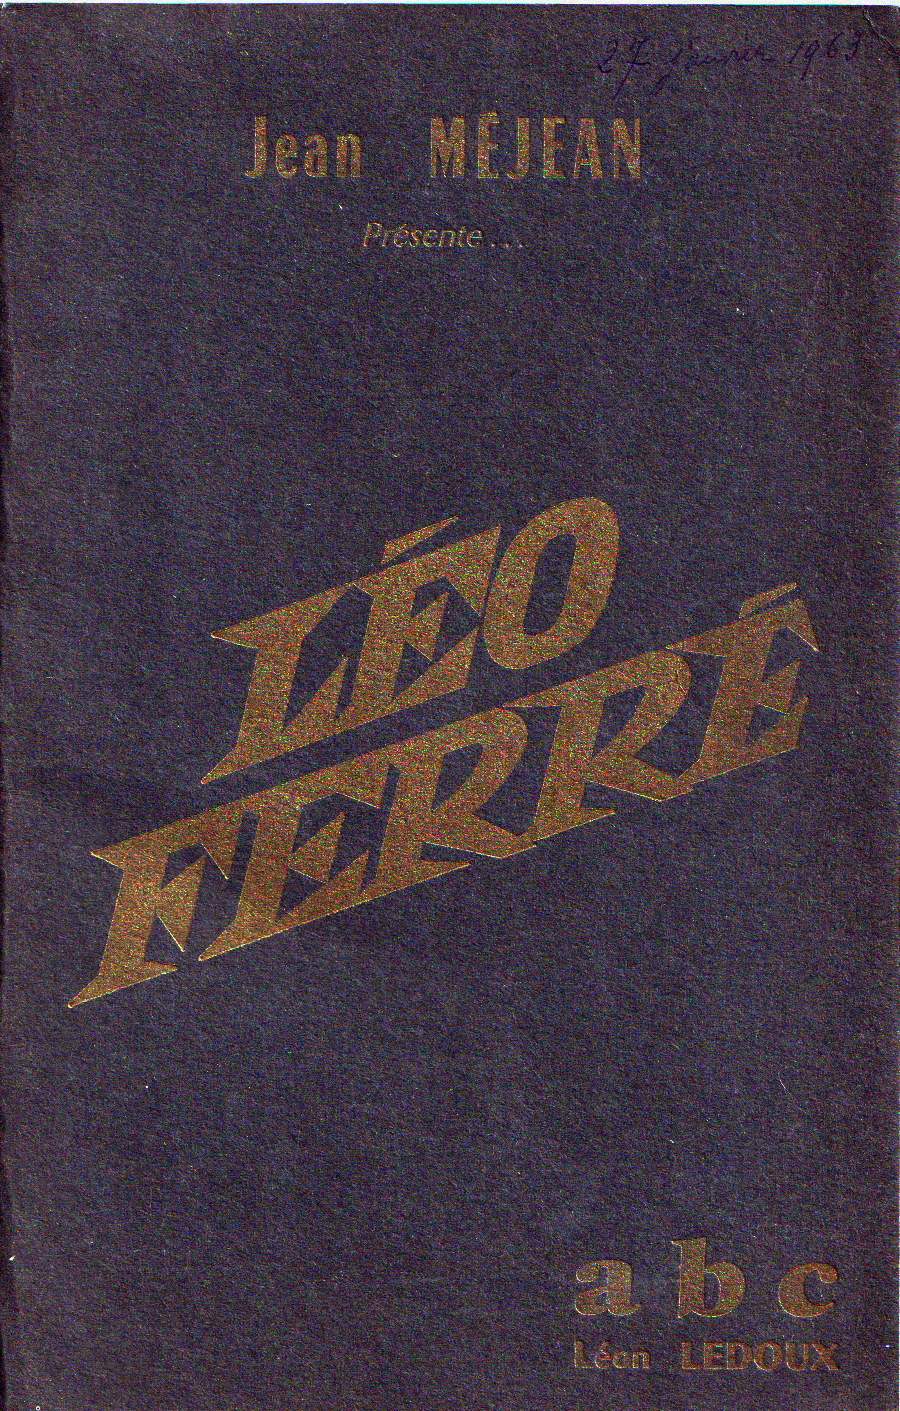 Léo Ferré à l'A.B.C.